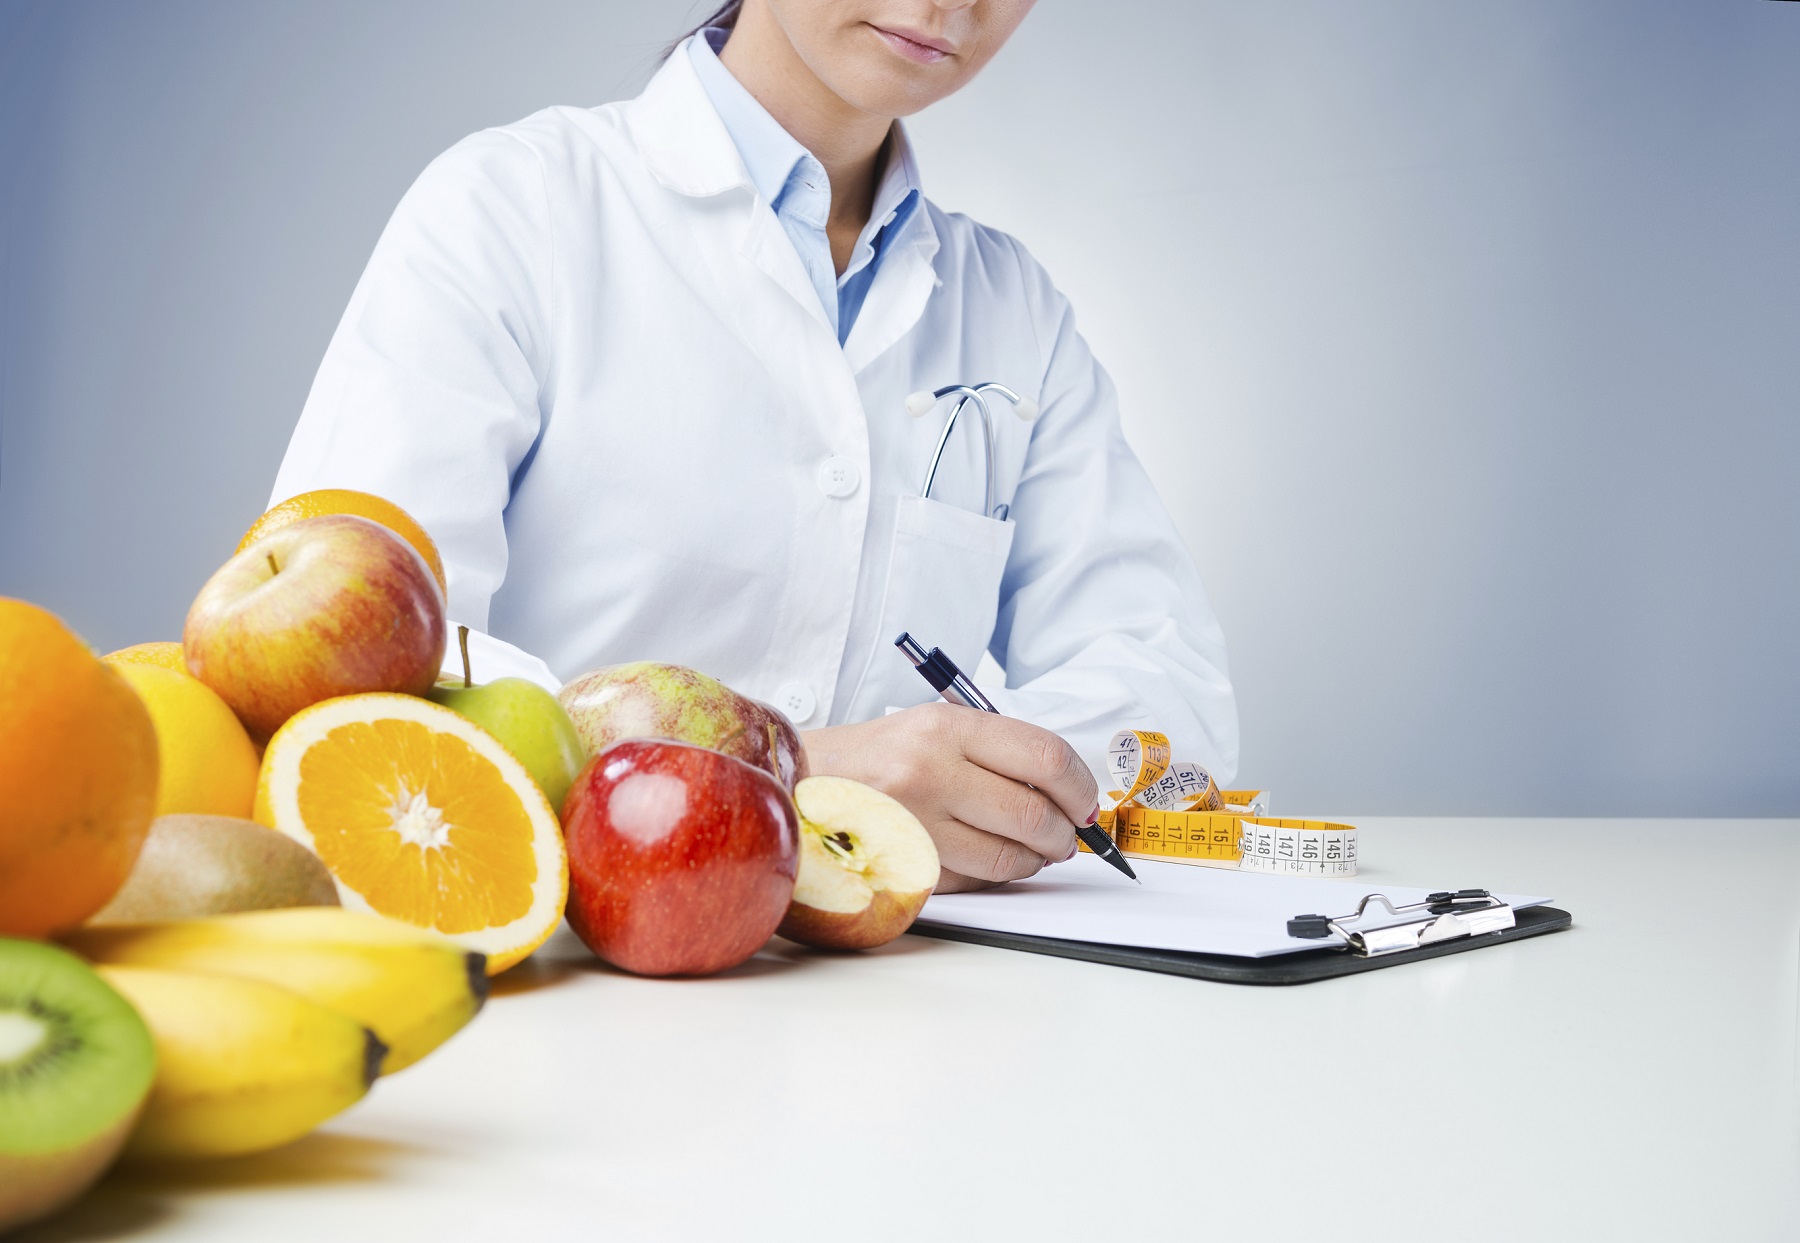 Curso salud nutricion y dietetica